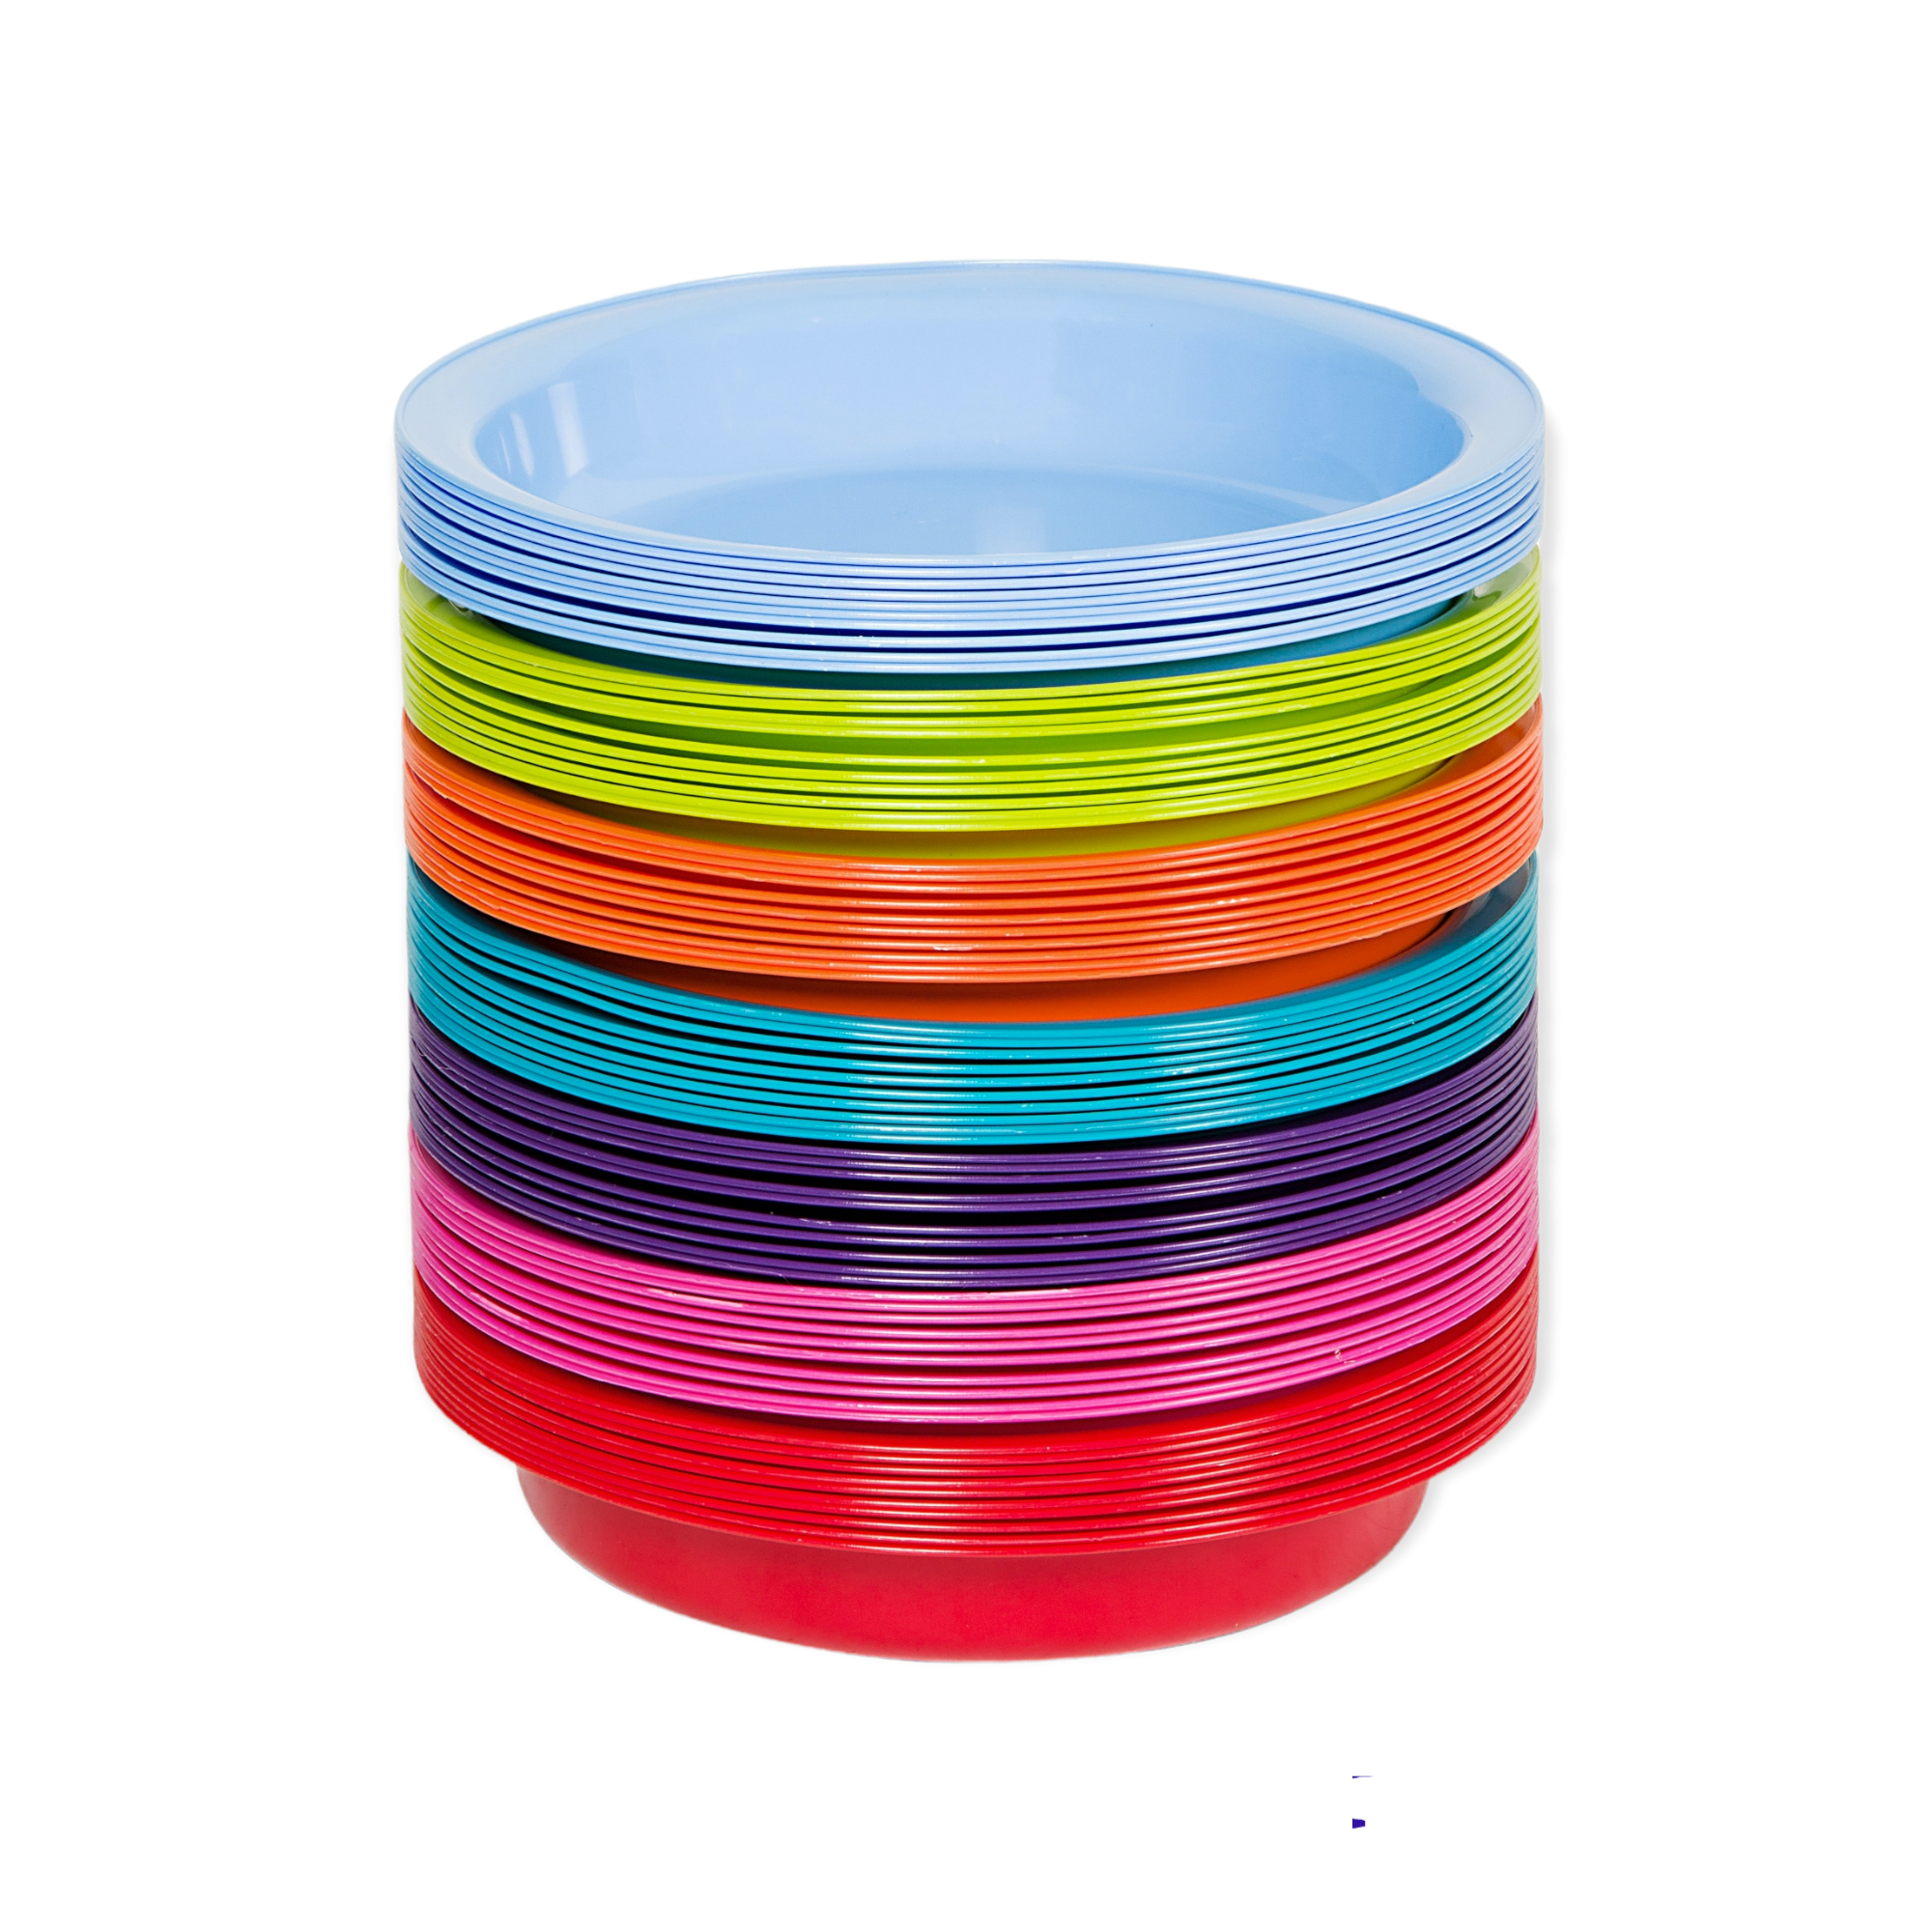 Plastic Party Plates 10s Buzz Kids